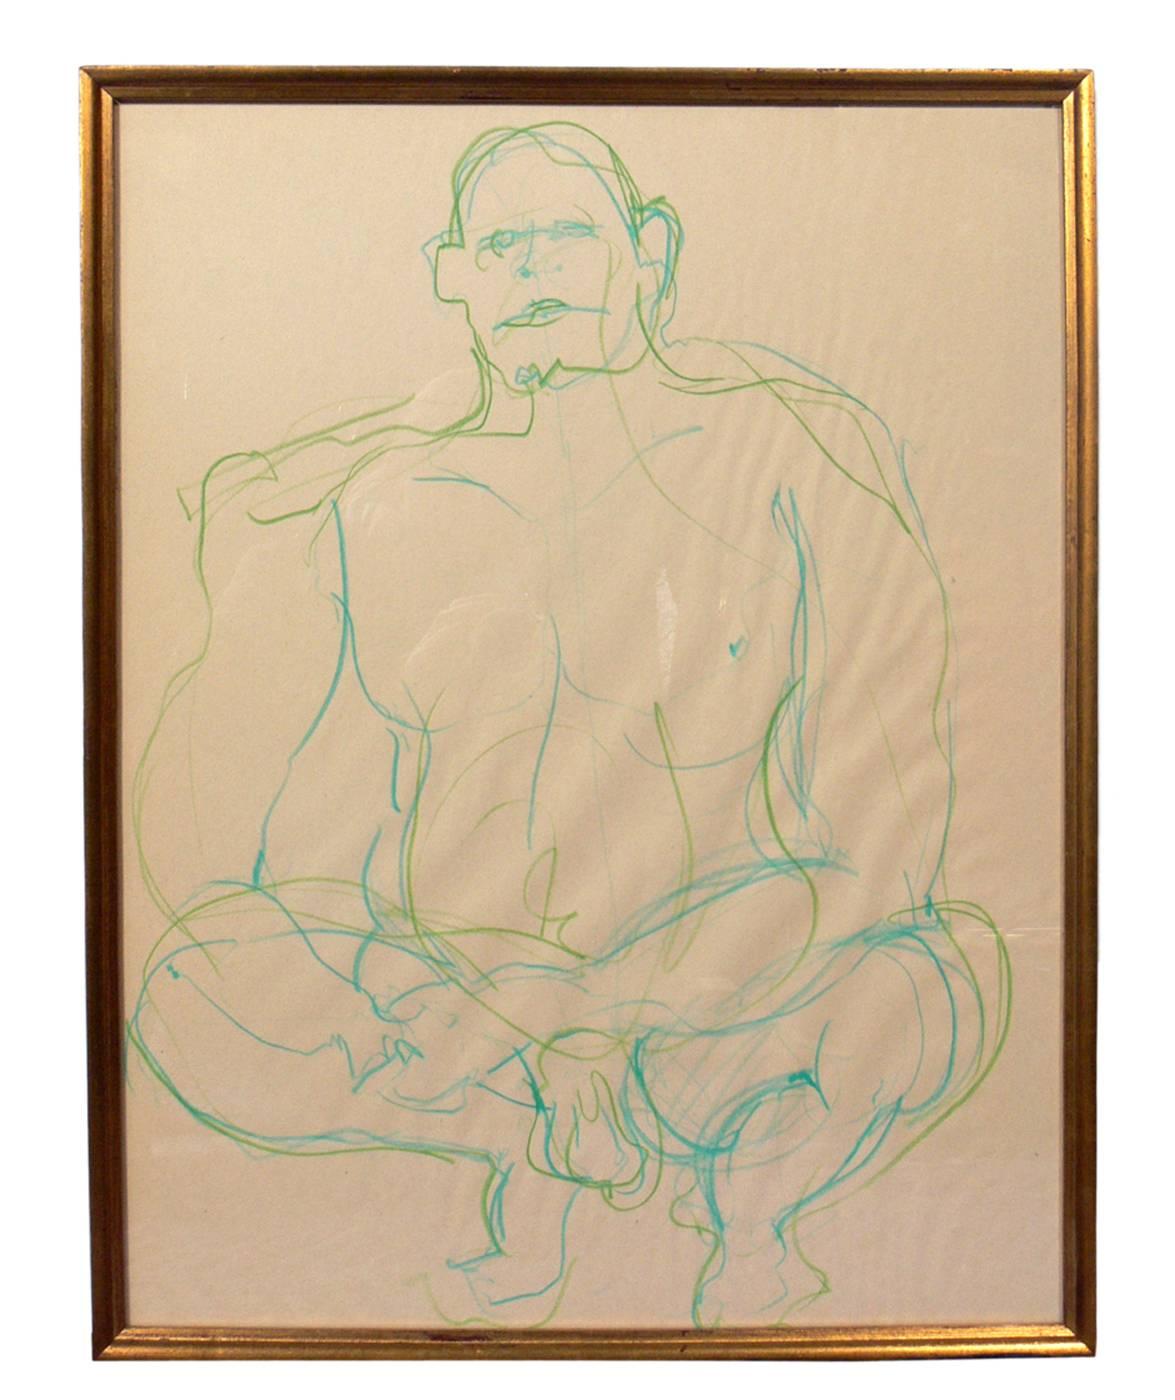 Sélection d'art moderne ou mur de galerie, (a) 1960. 
De gauche à droite, il s'agit de
1) Aquarelle d'un nu masculin sur papier bleu, vers les années 1960. Il a été VENDU.
2) Dessin au pastel d'un nu masculin, vers les années 1960. Il mesure 22,5 